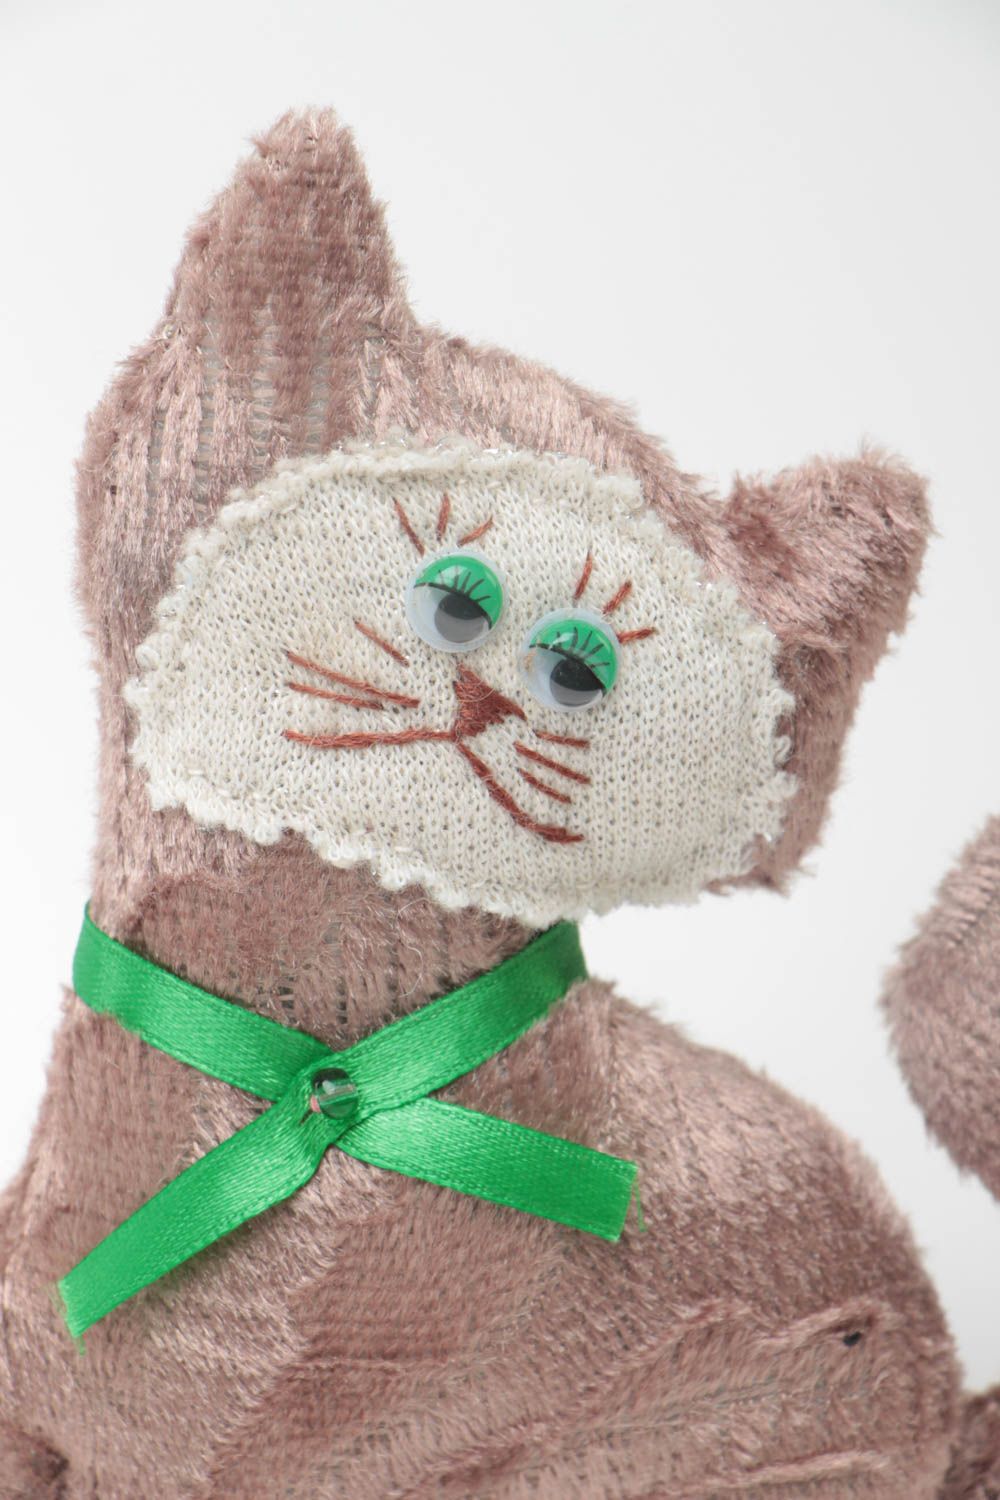 Шерстяная игрушка ручной работы в виде кота мягкая текстильная для ребенка фото 3